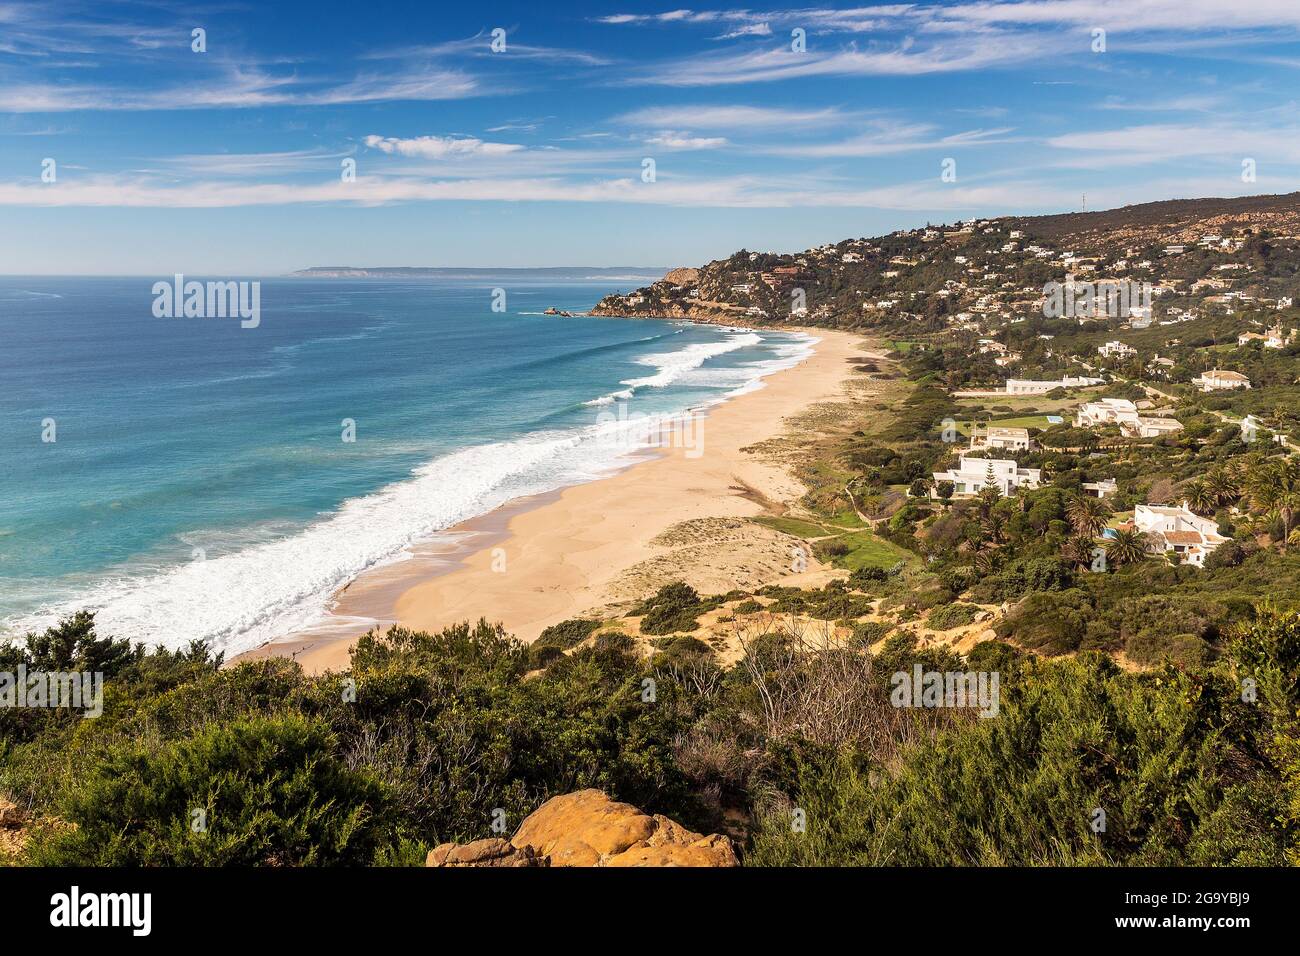 Aerial view of Los Alemanes beach from Zahara de Los Atunes, Cadiz, Andalusia, Spain Stock Photo